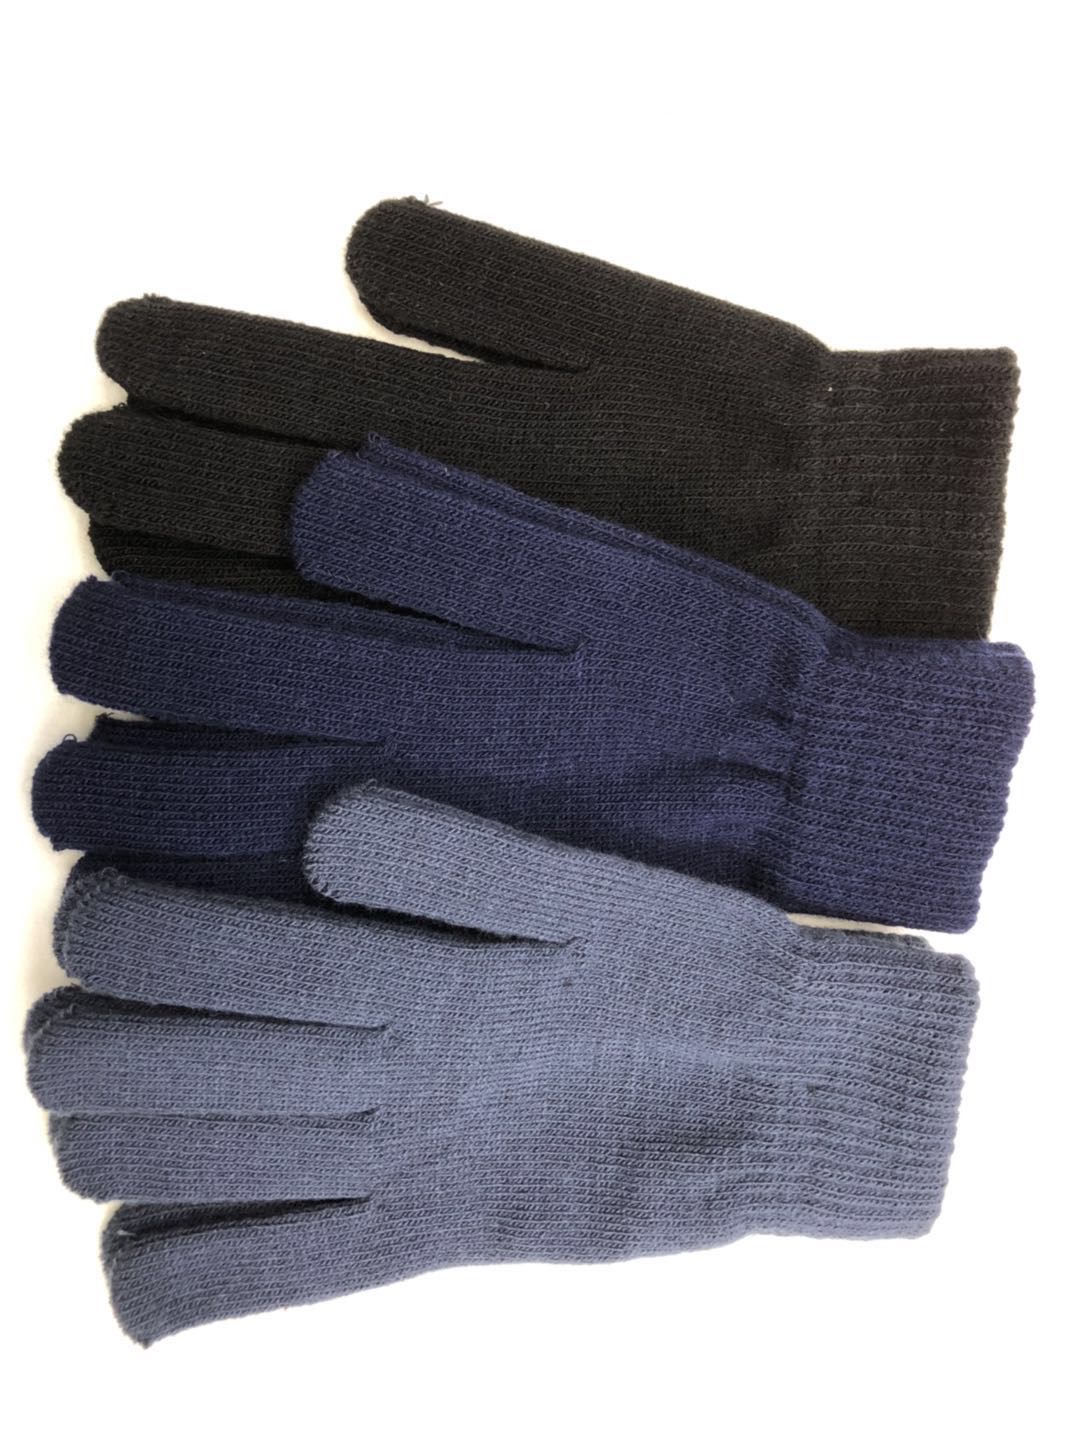 魔术手套户外运动冬季保暖针织毛线手套 地摊货源批发产品图